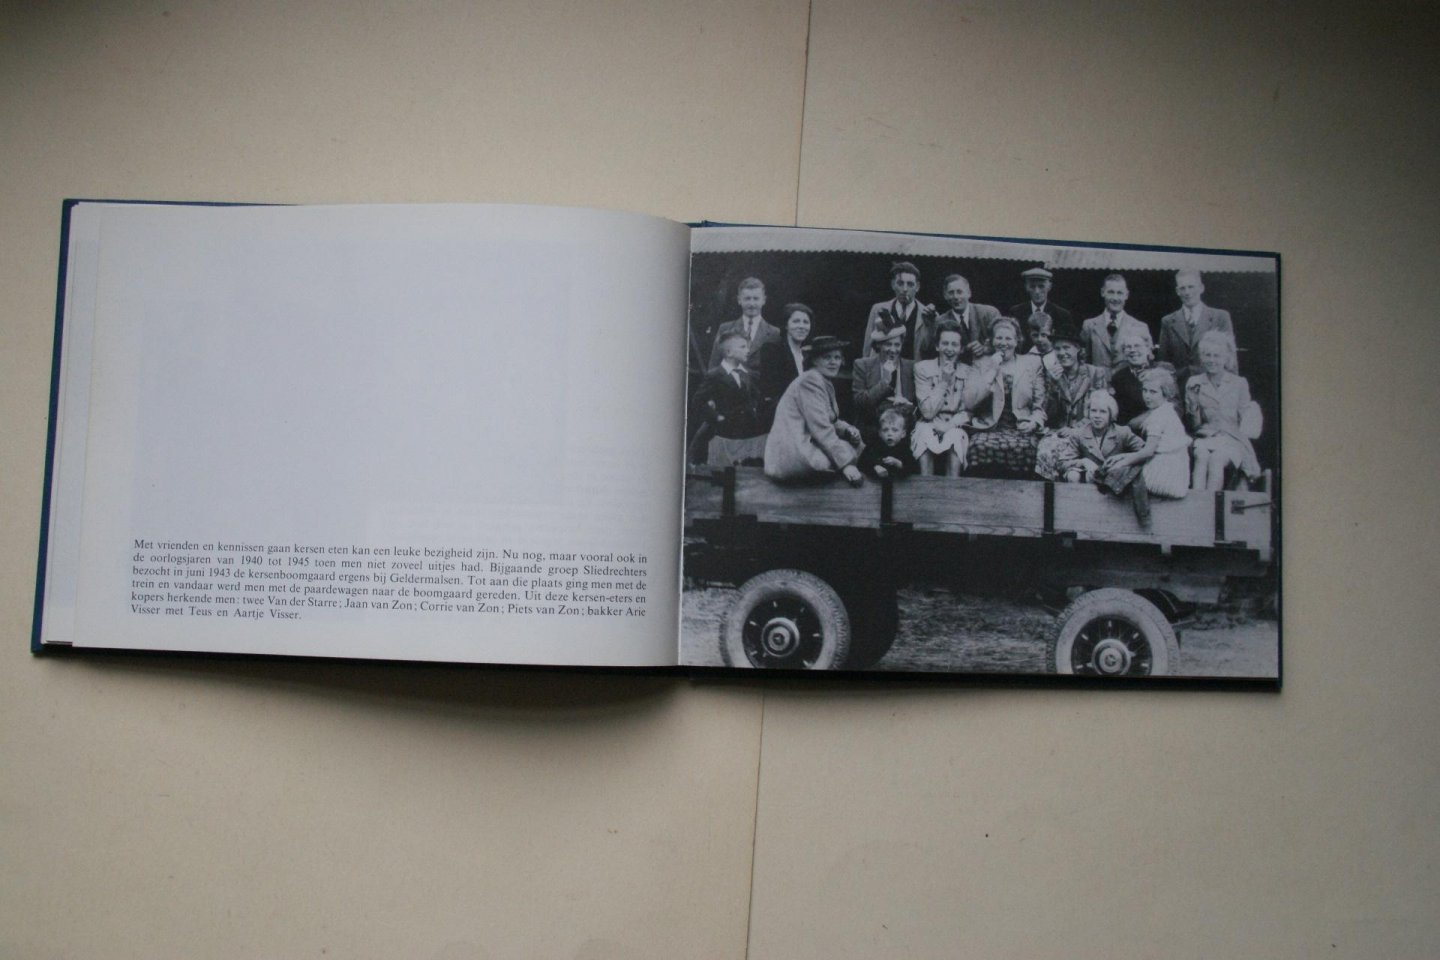 Laak, P.J. ter - 5 boeken: SLIEDRECHTSE Plaatjes en Praatjes foto's van Oud Sliedrecht van 1900 tot 1950   &   SLIEDRECHT in de goede oude tijd   &   SLIEDRECHT uit Oma's foto-album   &   SLIEDRECHTSE kiekjes uit grootmoederstijd   &   KENT U ZE NOG..de SLIEDRECHTERS